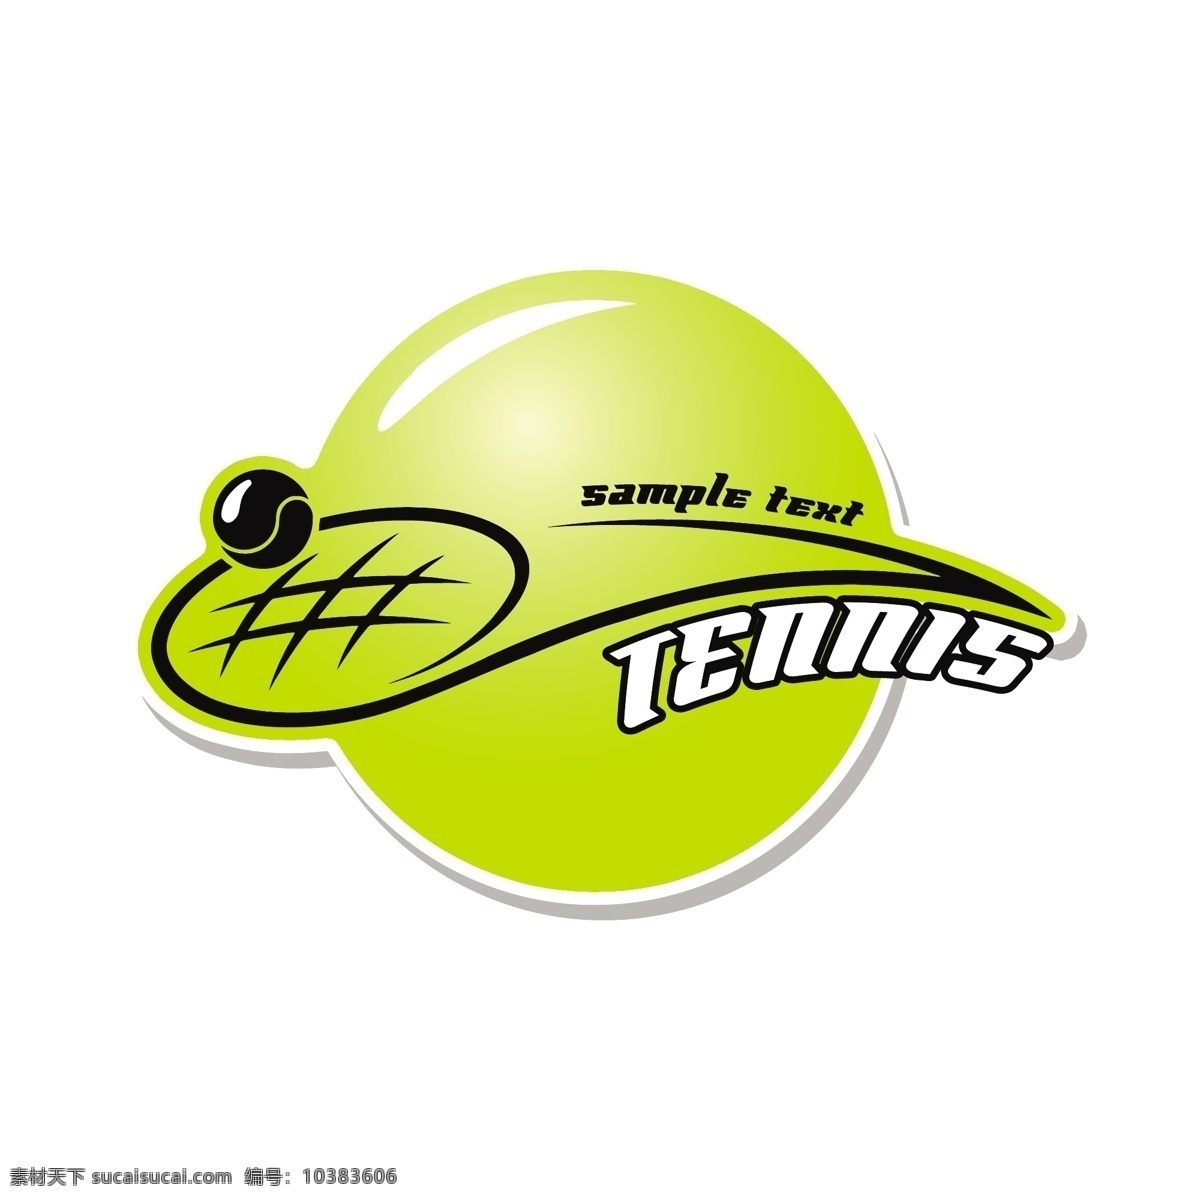 网球标志设计 网球运动 网球标志 网球图标 体育运动 体育项目 生活百科 矢量素材 白色